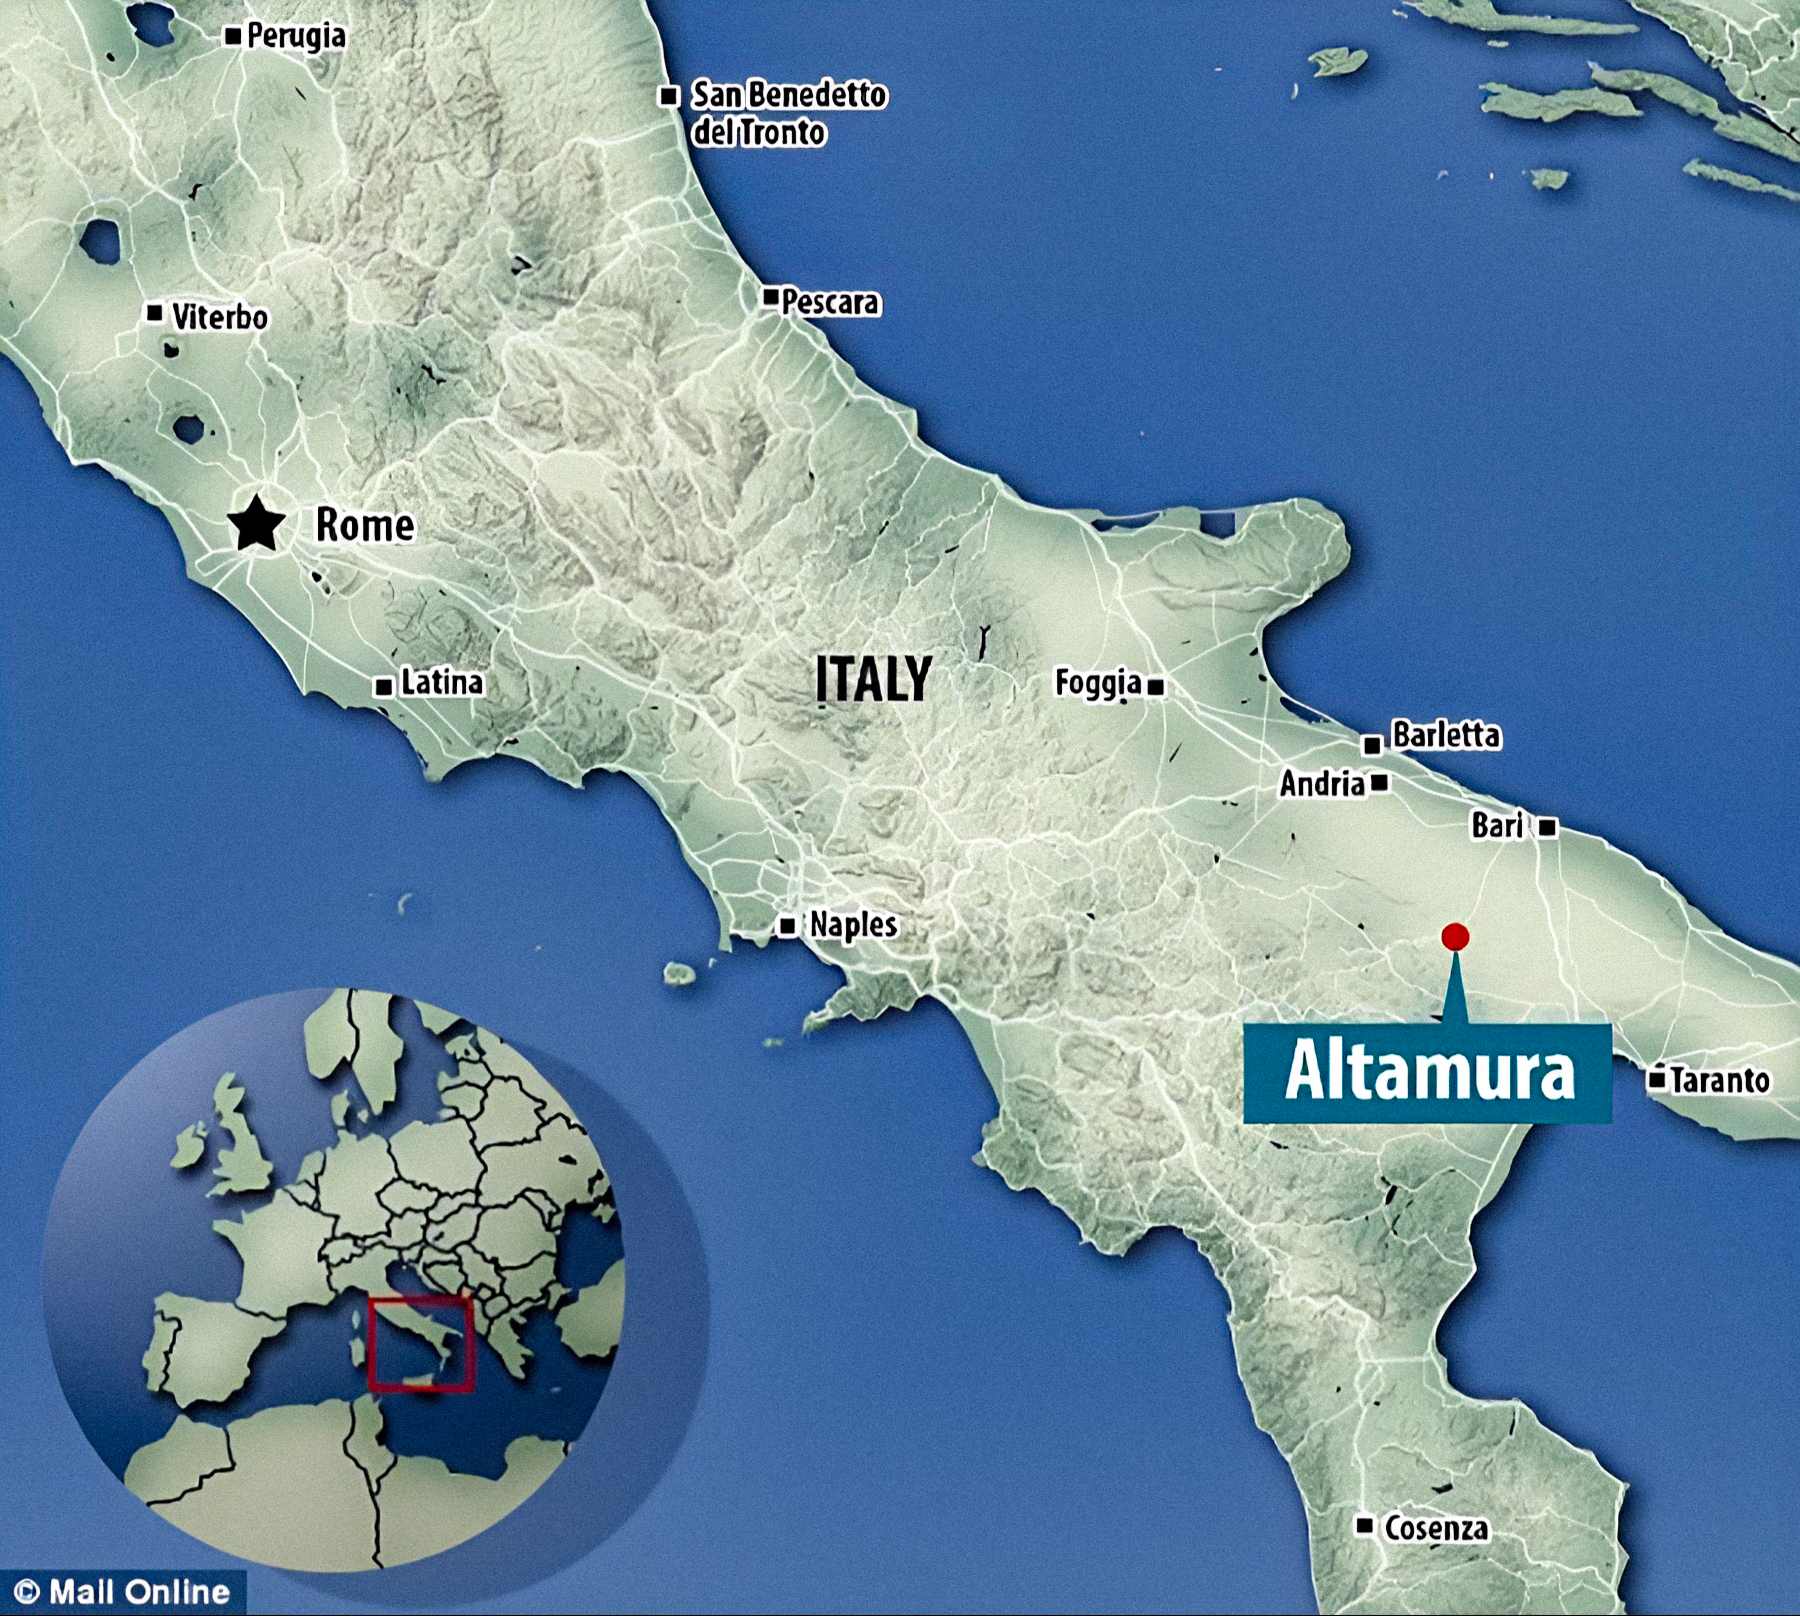 Lamalungas alas atrašanās vieta, kur tika atrasts unikāli saglabātais neandertāliešu skelets, atrodas netālu no Altamura, Itālijā. Attēla kredīts: DailyMail